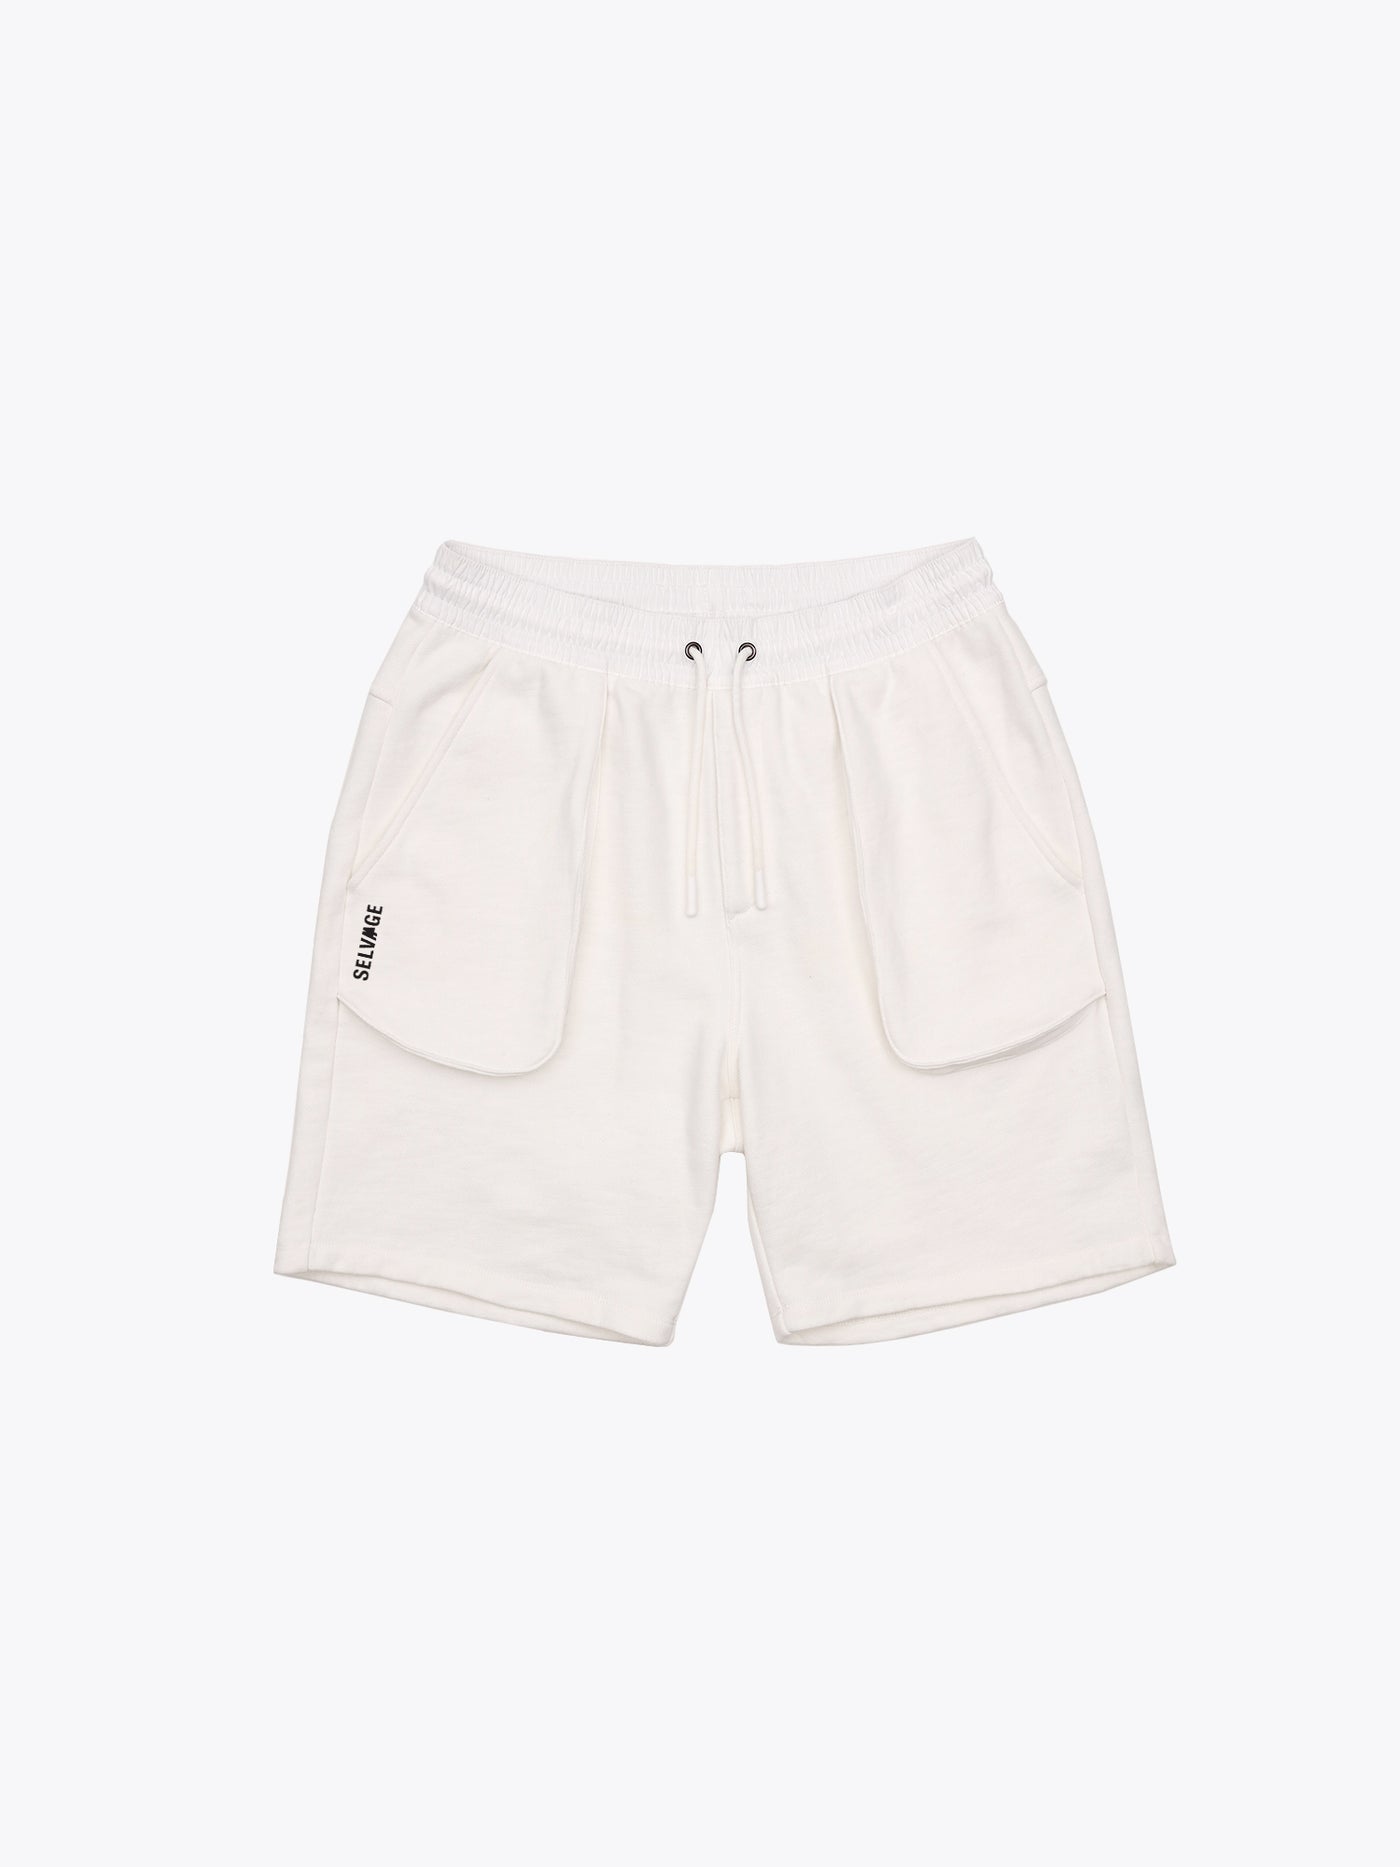 Lounge Shorts - Off white